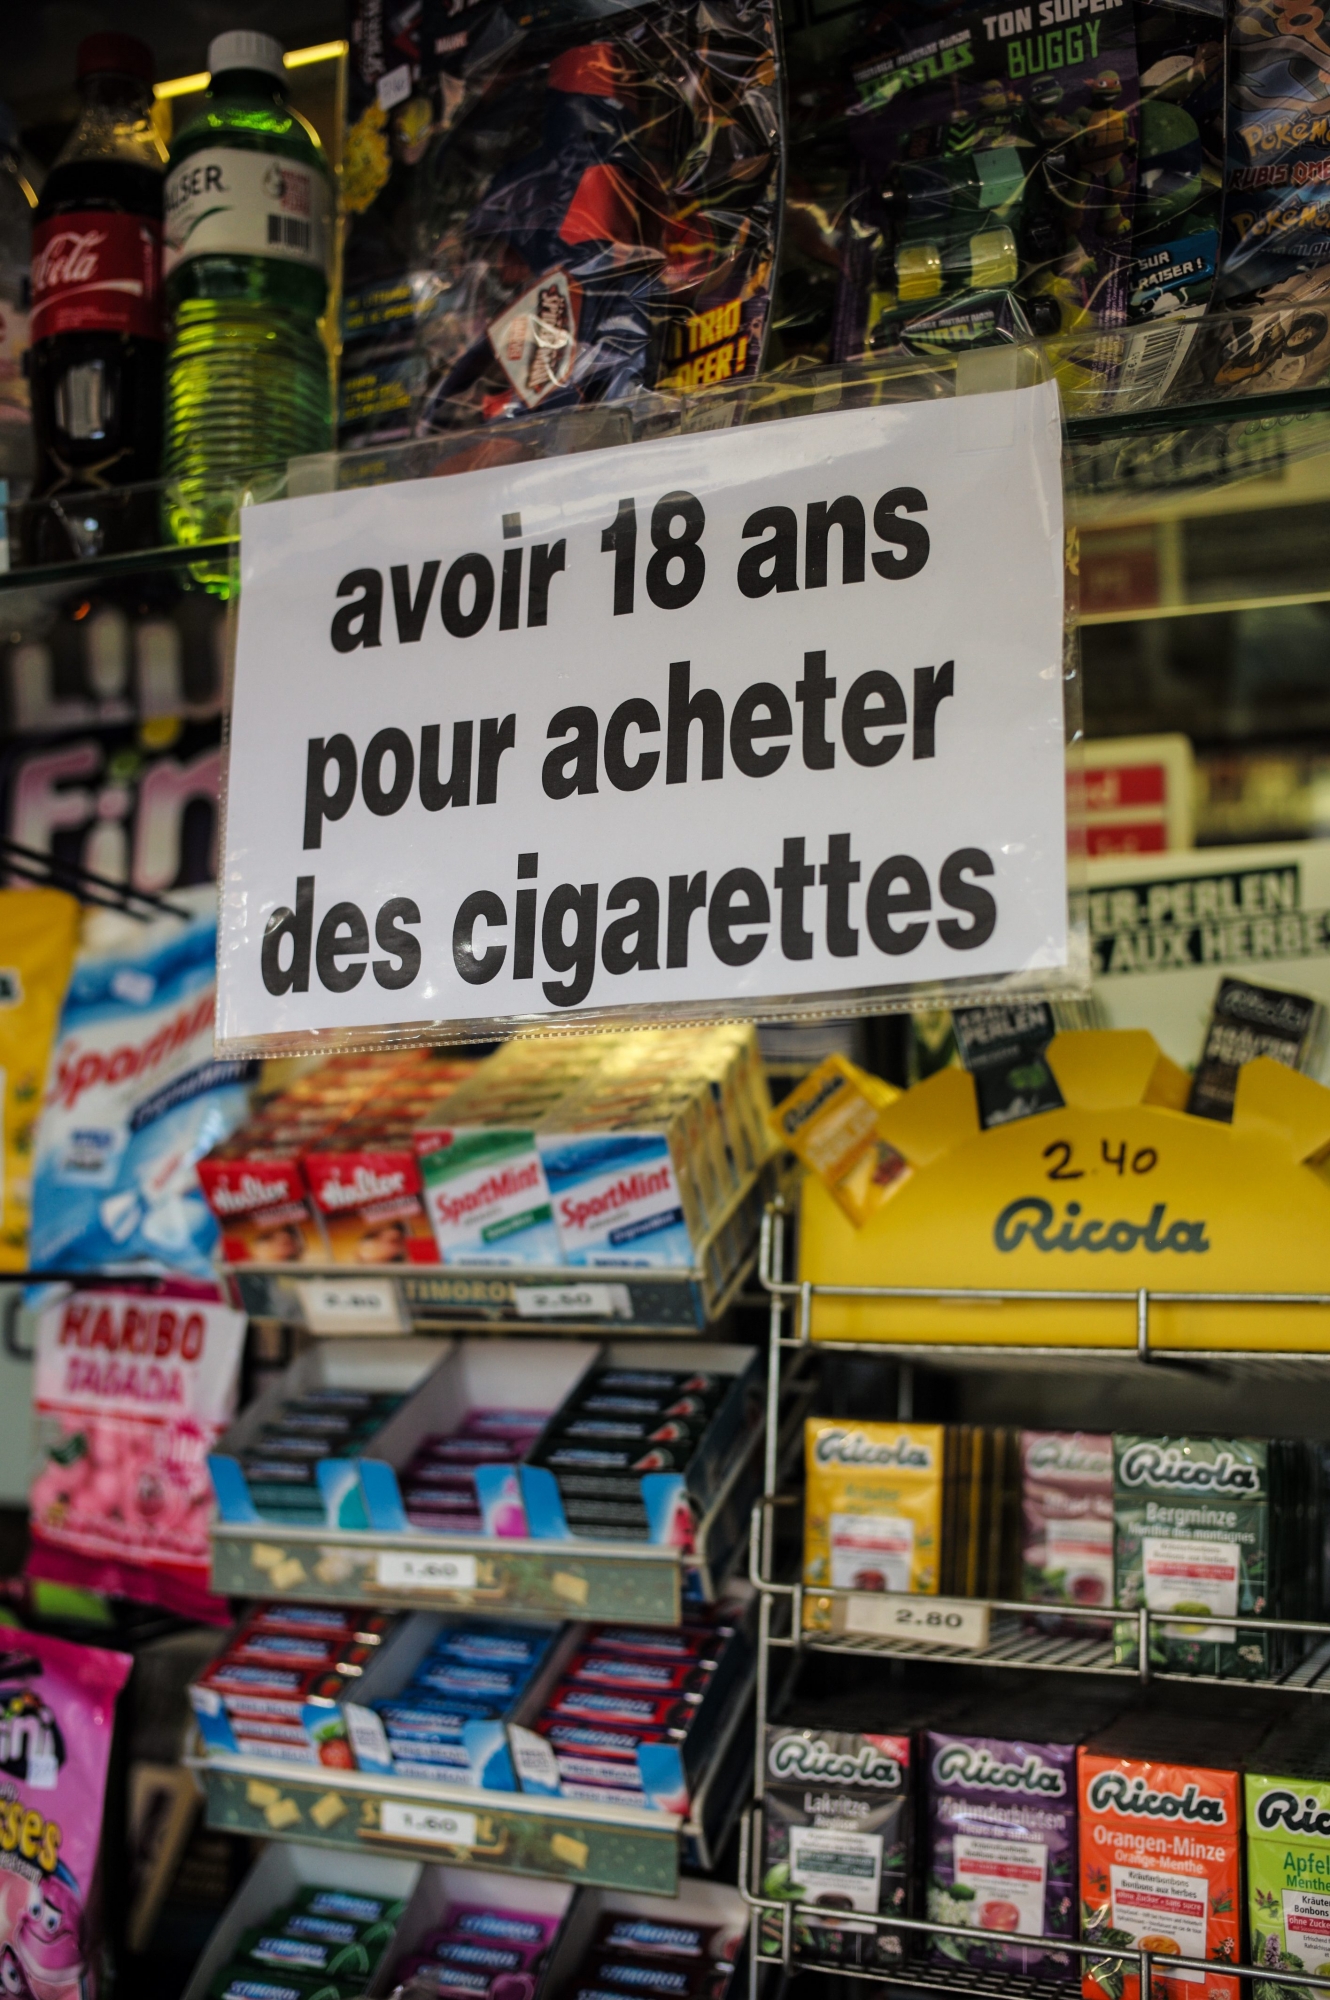 Vente de cigarettes pas avant 18 ans.
Ici au kiosque du Bois du Petit-Chateau.

LA CHAUX-DE-FONDS 6 01 2015
Photo: Christian Galley KIOSQUE